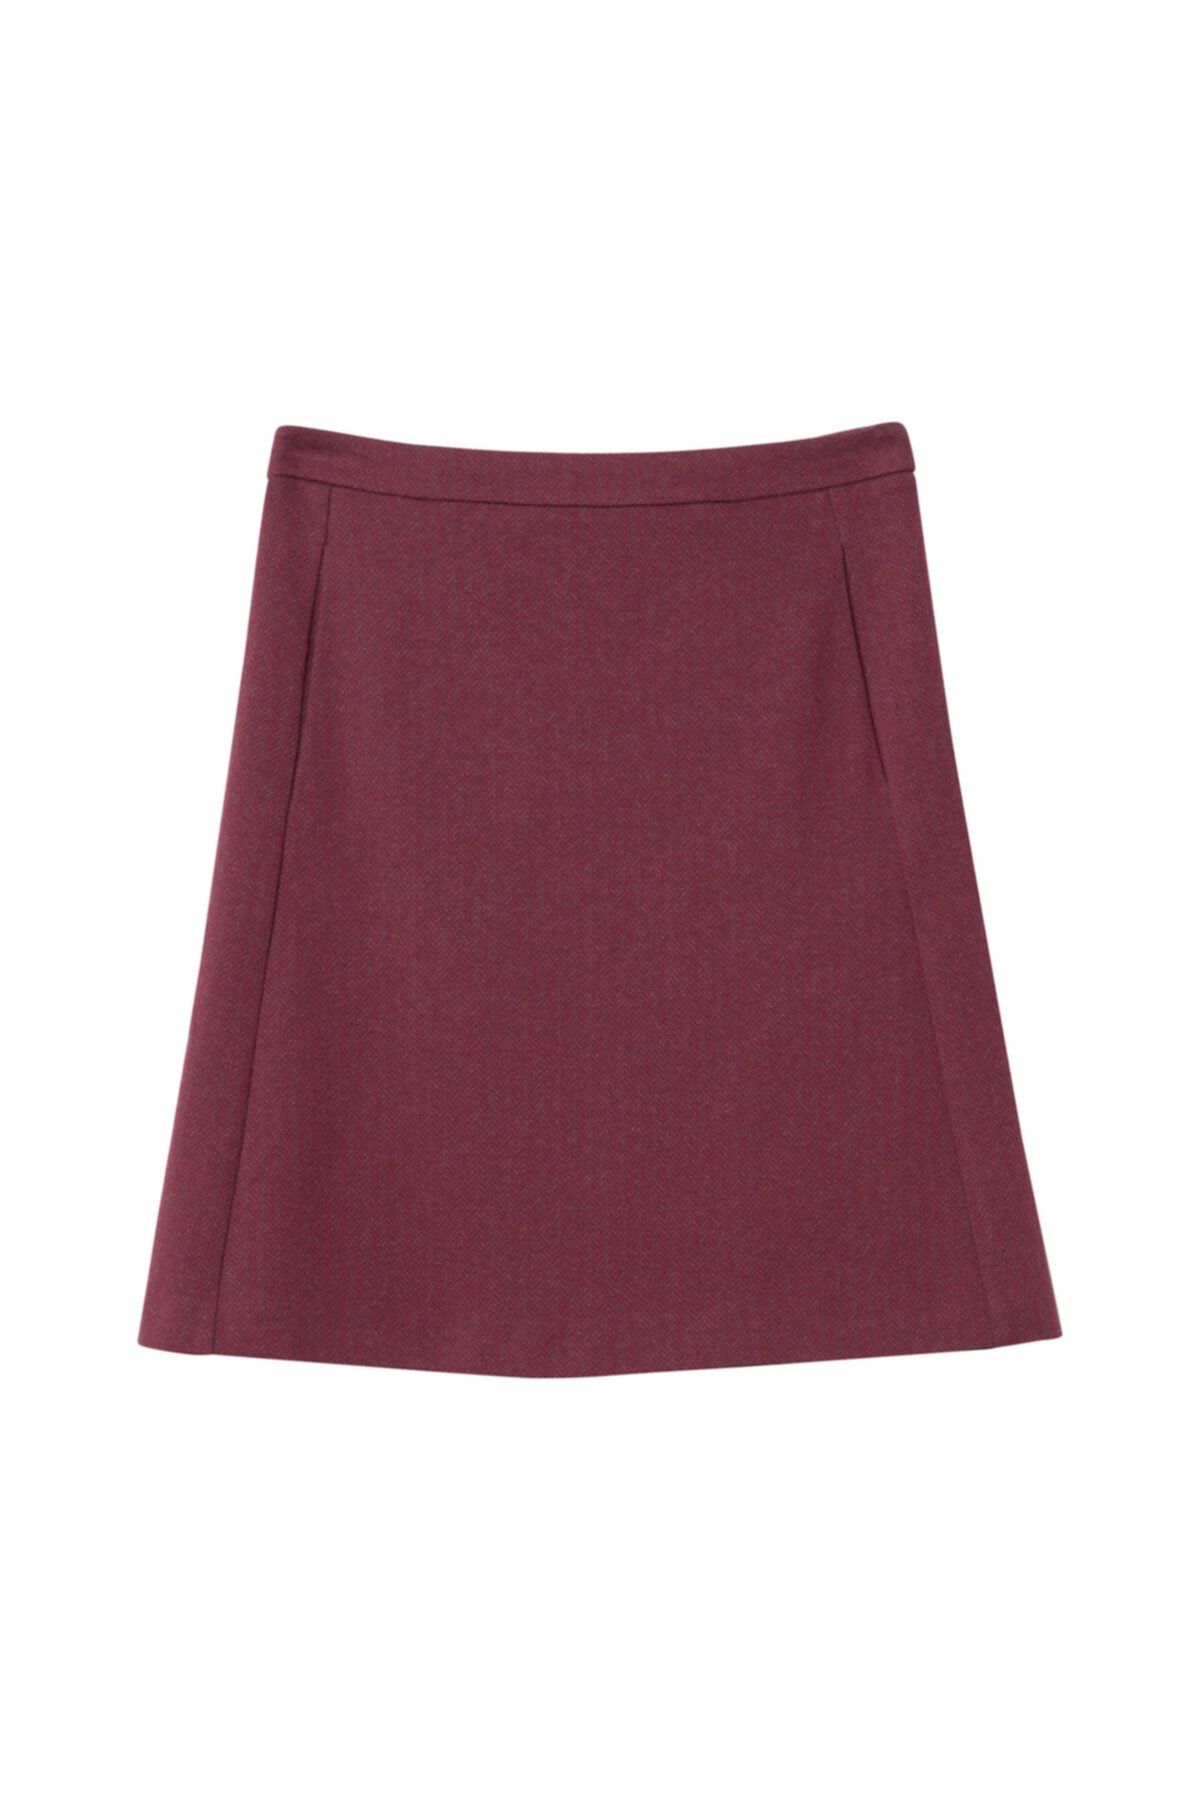 Gant Kadın Bordo Herringbone Jersey Skirt Etek